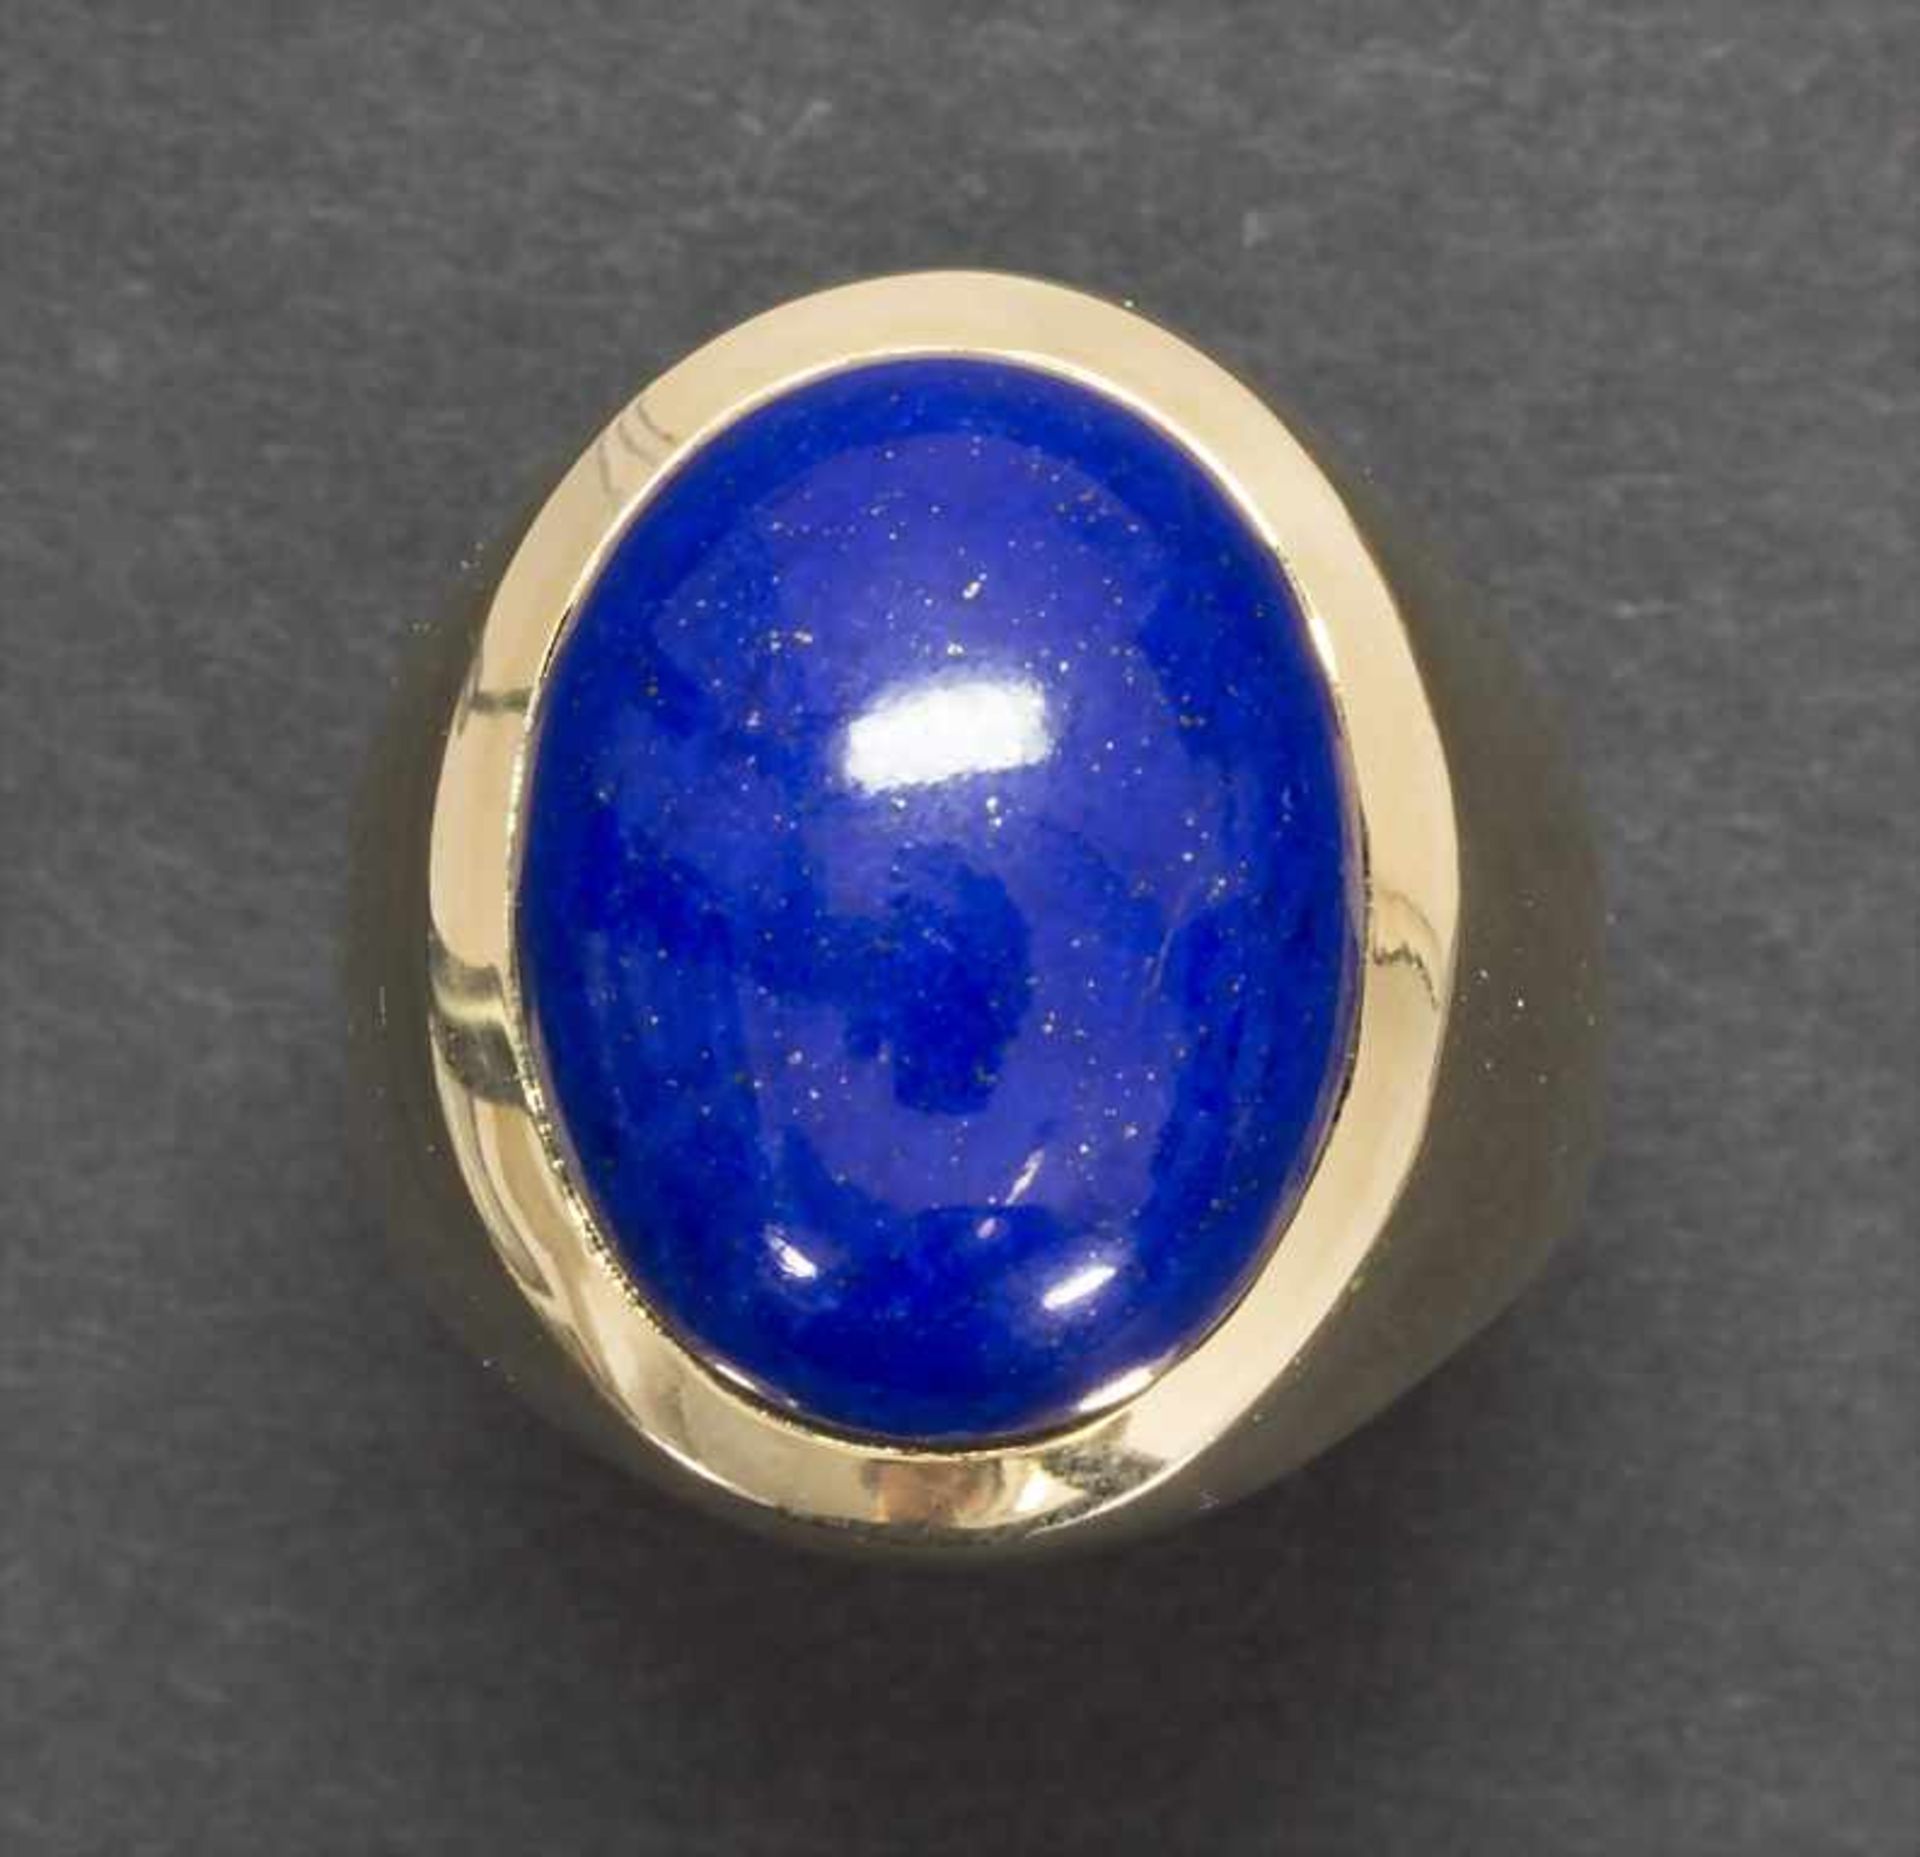 Herrenring mit Lapislazuli / A men's ring with lapis lazuli